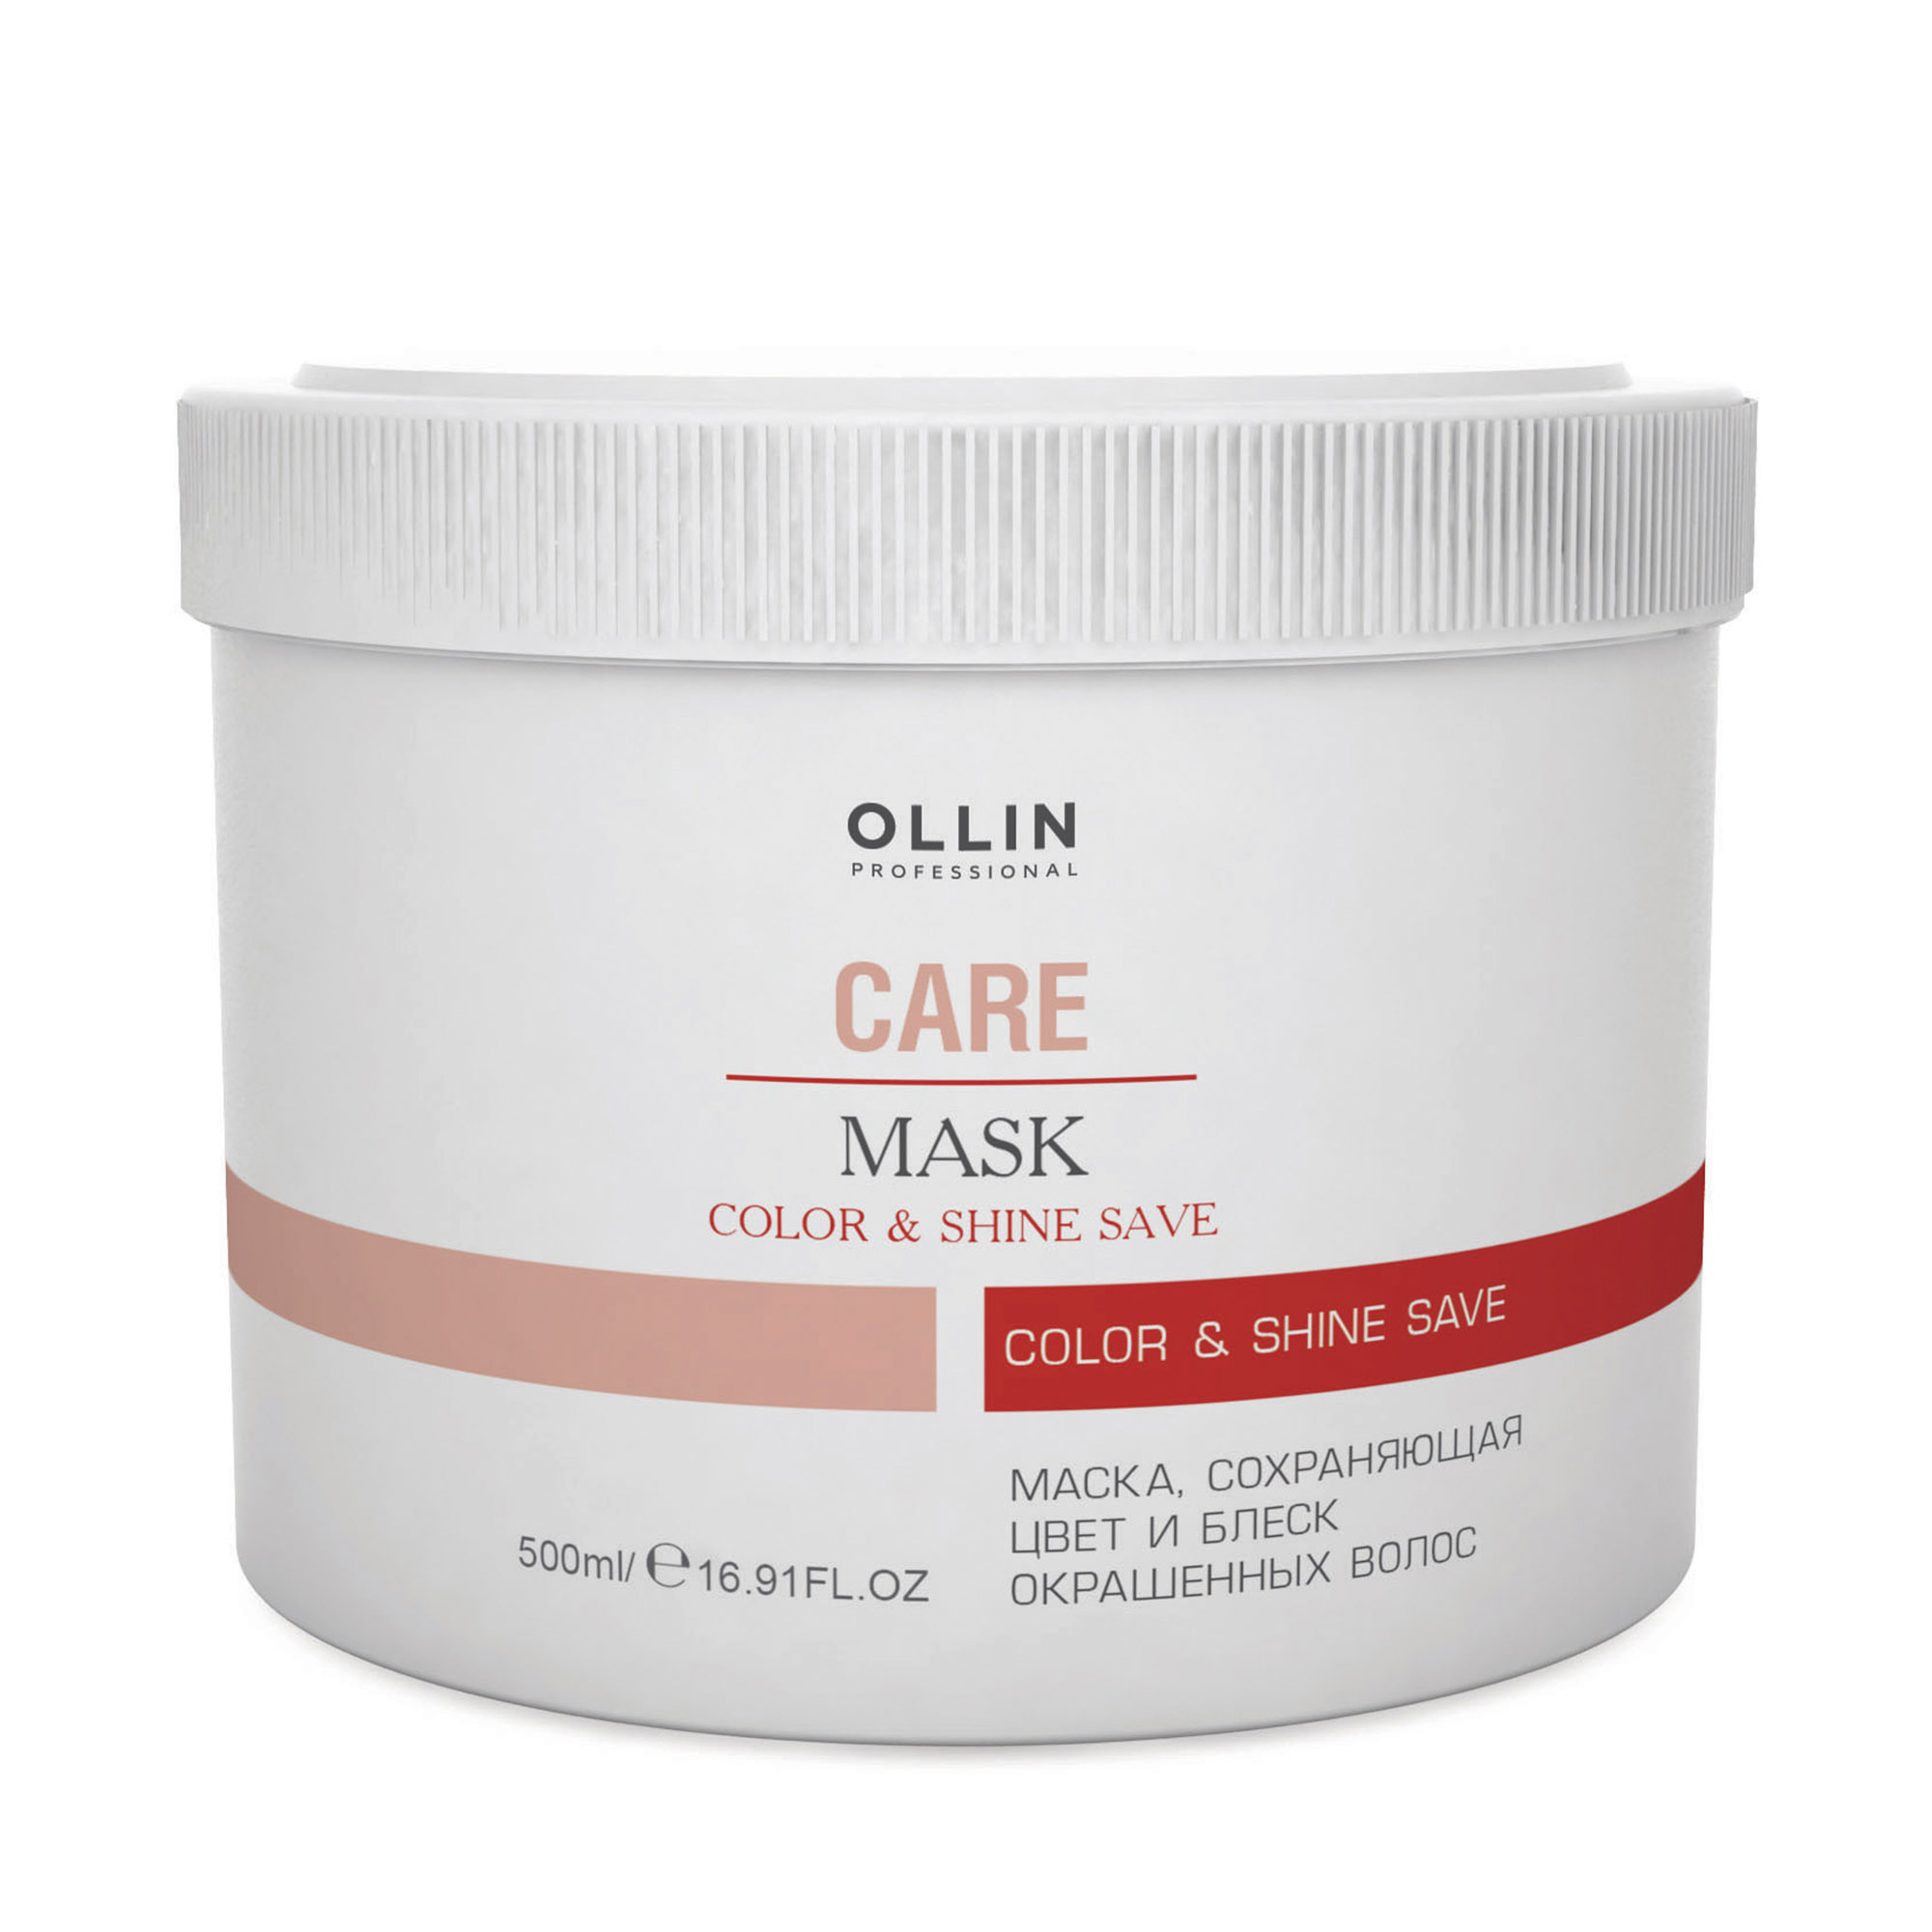 Маска Ollin Professional  Care Color and Shine Save сохраняющий цвет и блеск окрашенных волос 500 мл маска 3 глины для волос жирных у корней и сухих на кончиках стакан 250 мл